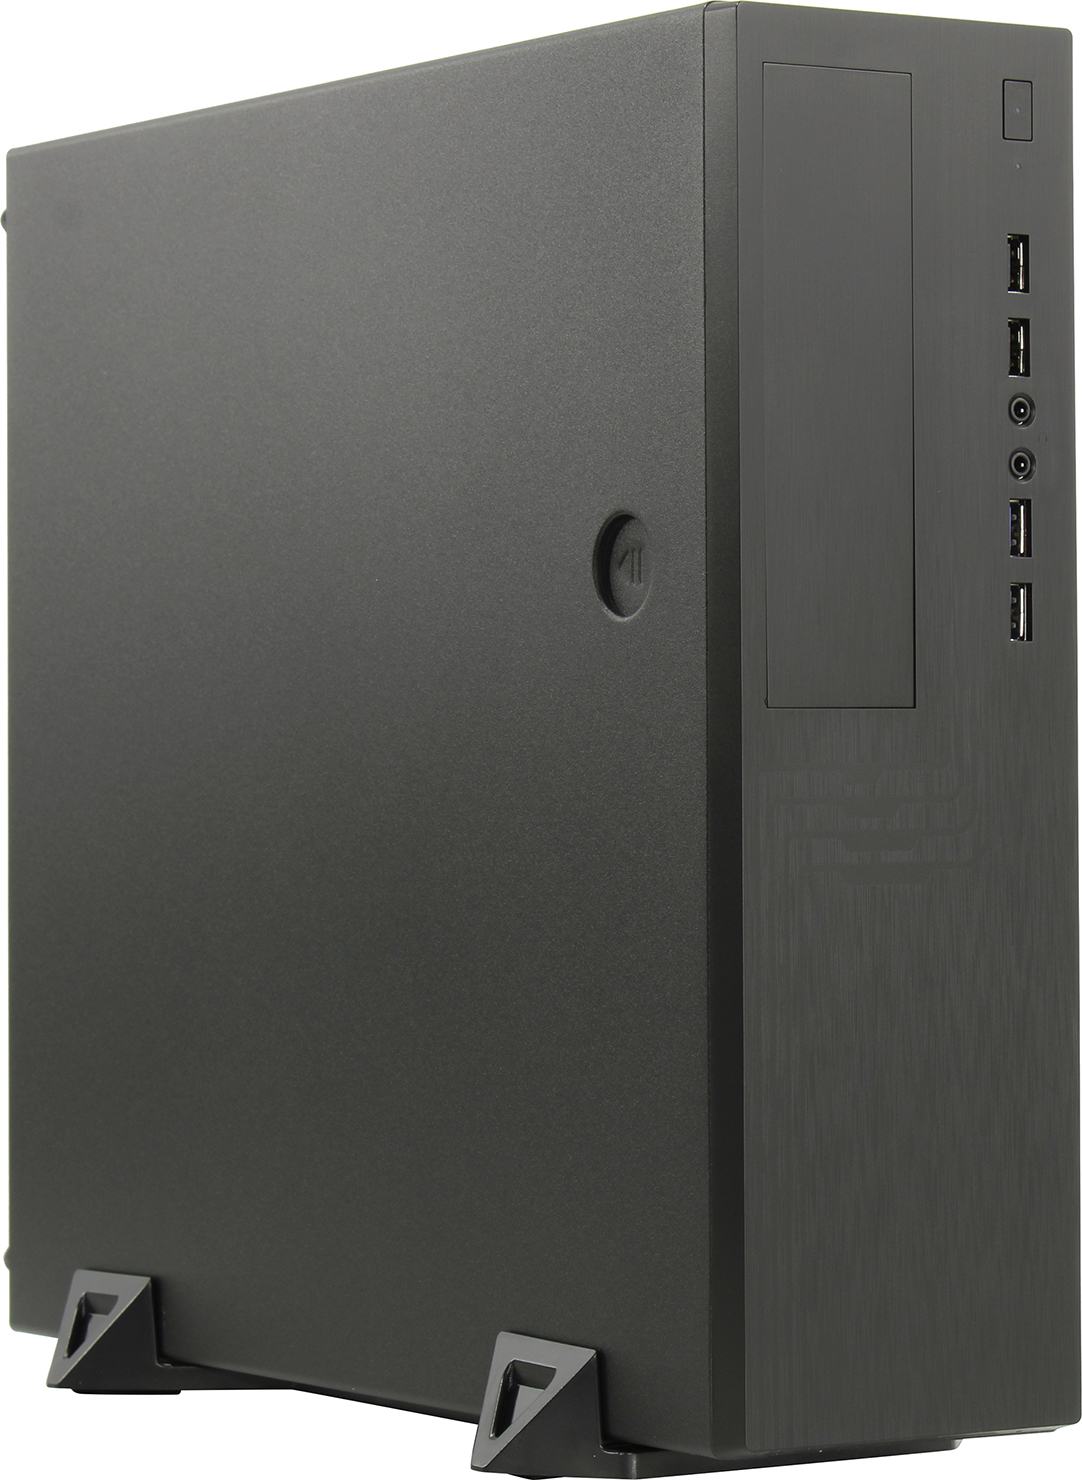 Корпус Powerman EL555, mATX, Slim-Desktop, 2xUSB 3.0, черный, Без БП (6141296)